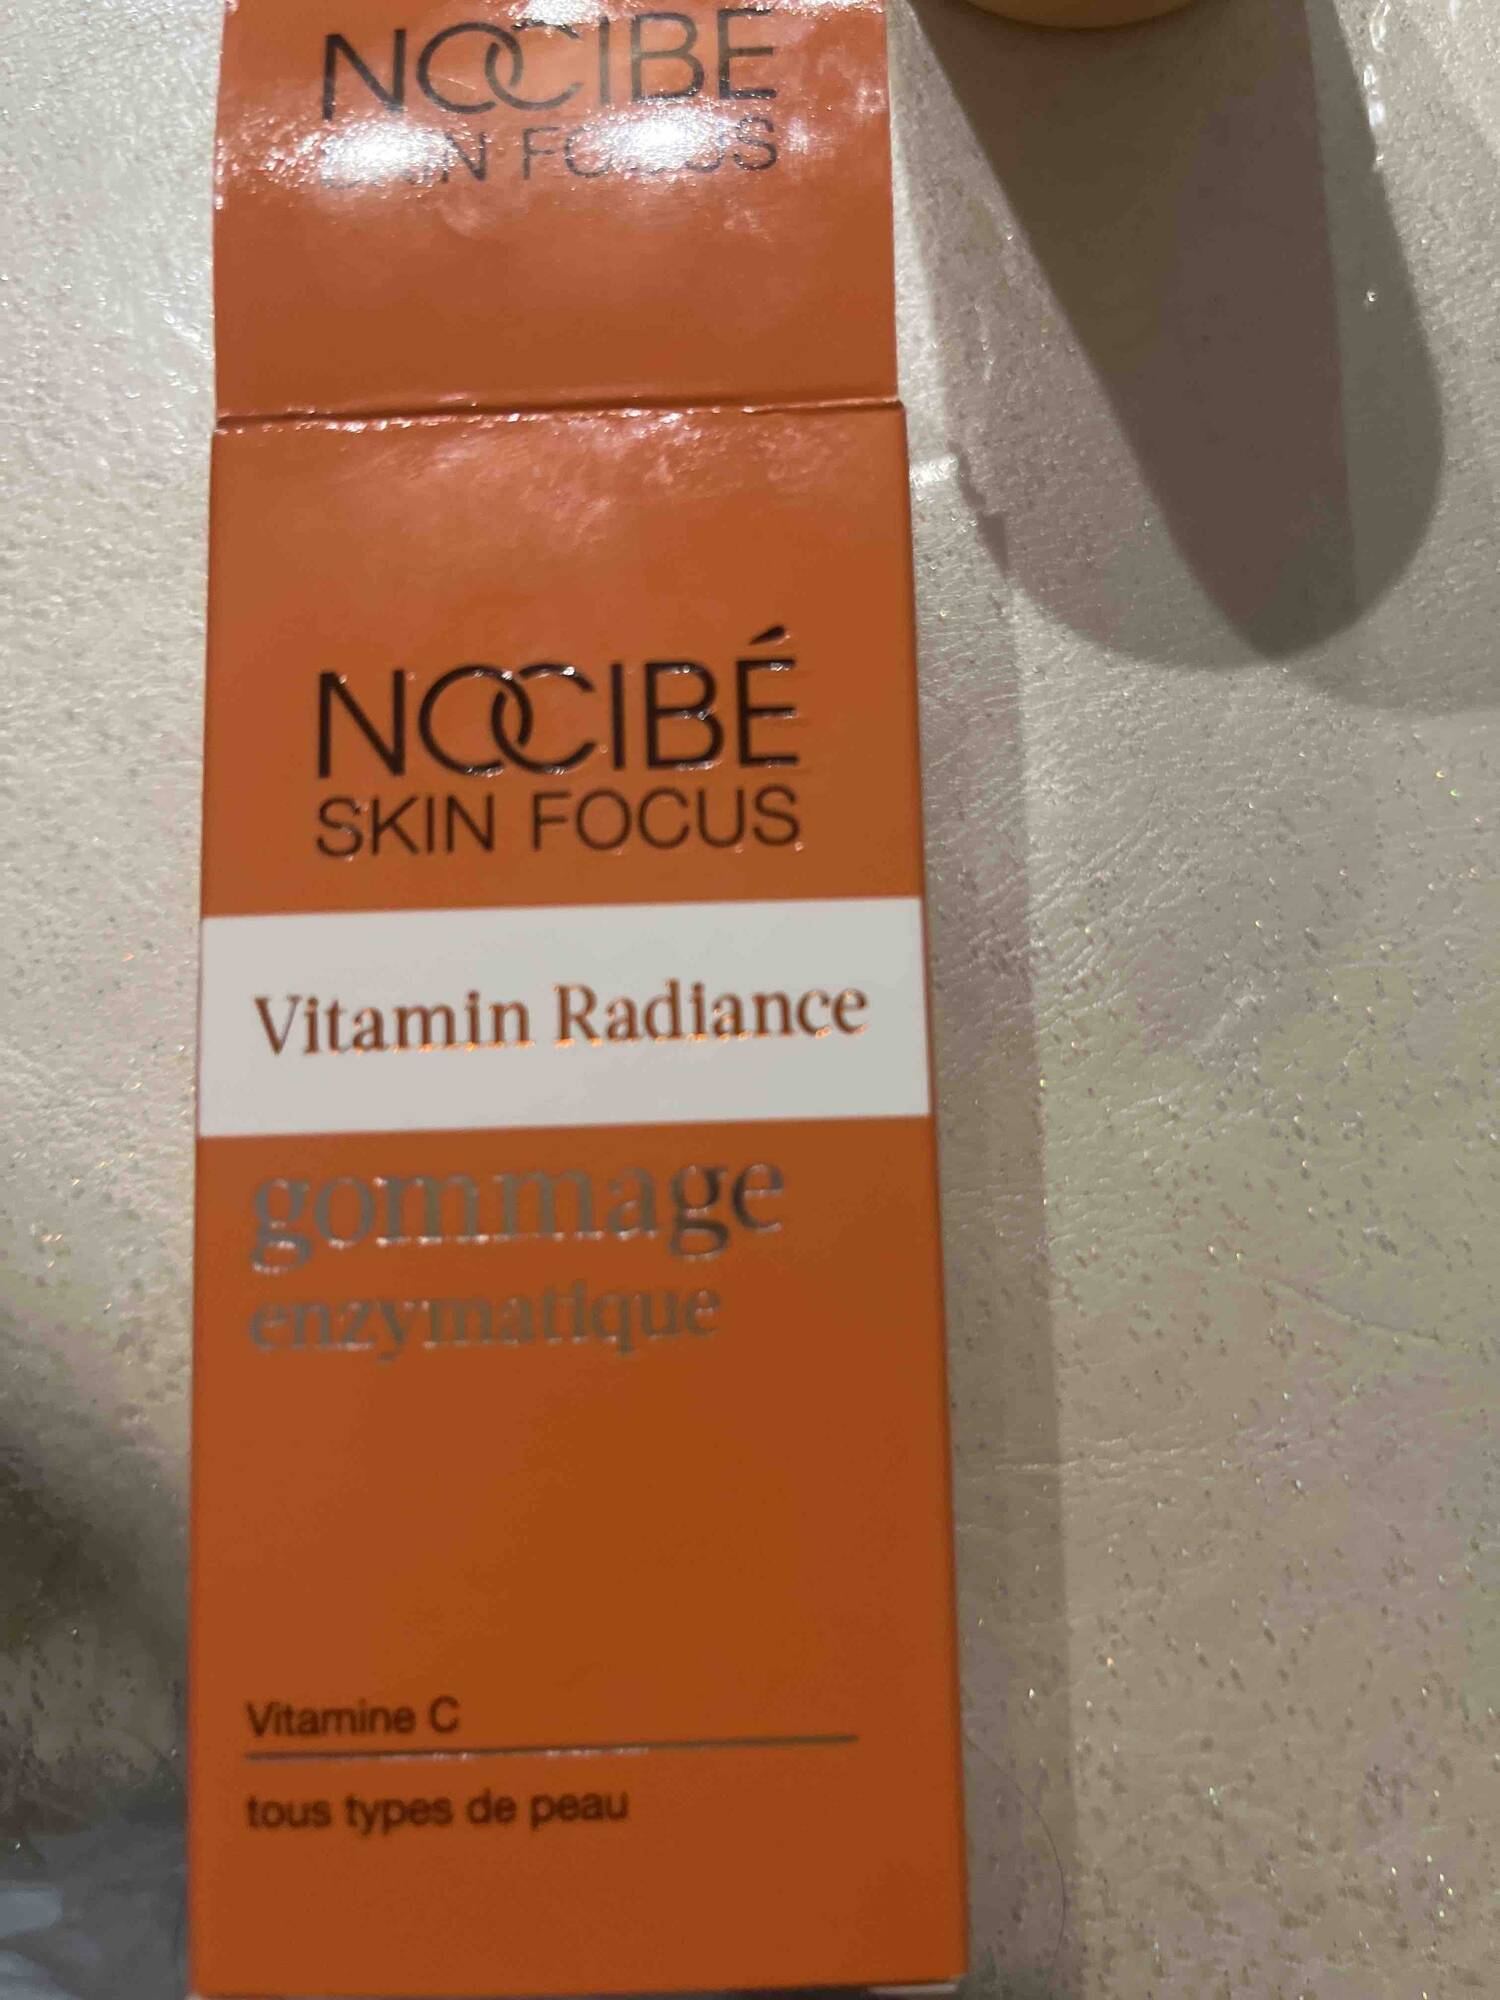 NOCIBE SKIN FOCUS - Vitamine radiance_gommage enzymatique